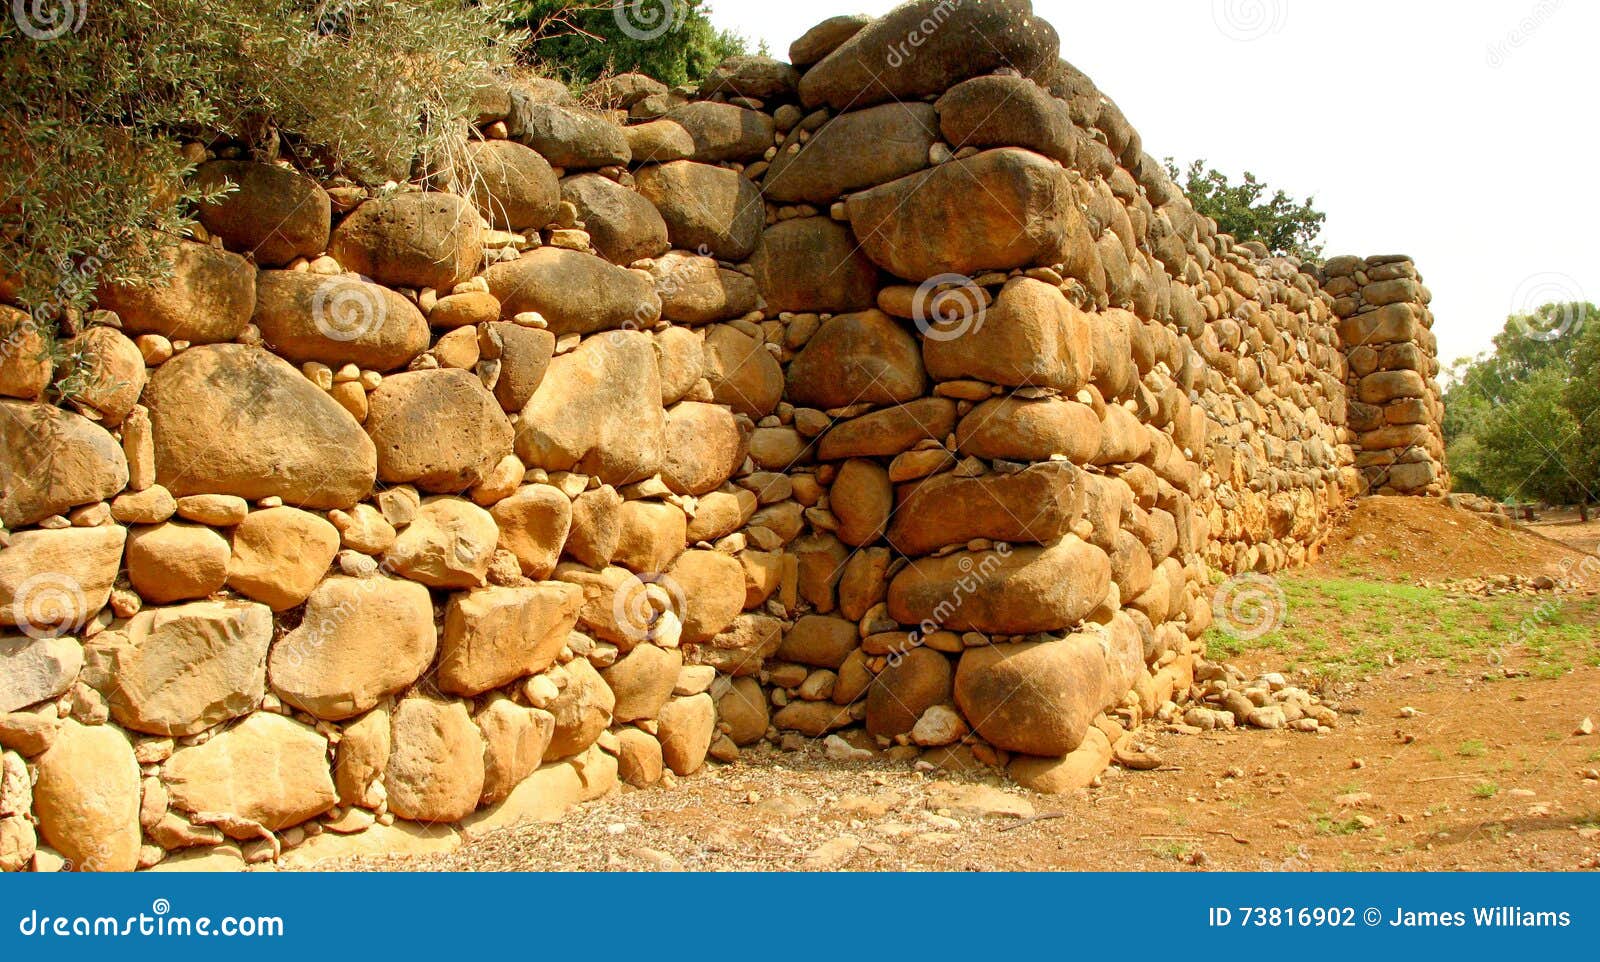 ancient tel dan wall